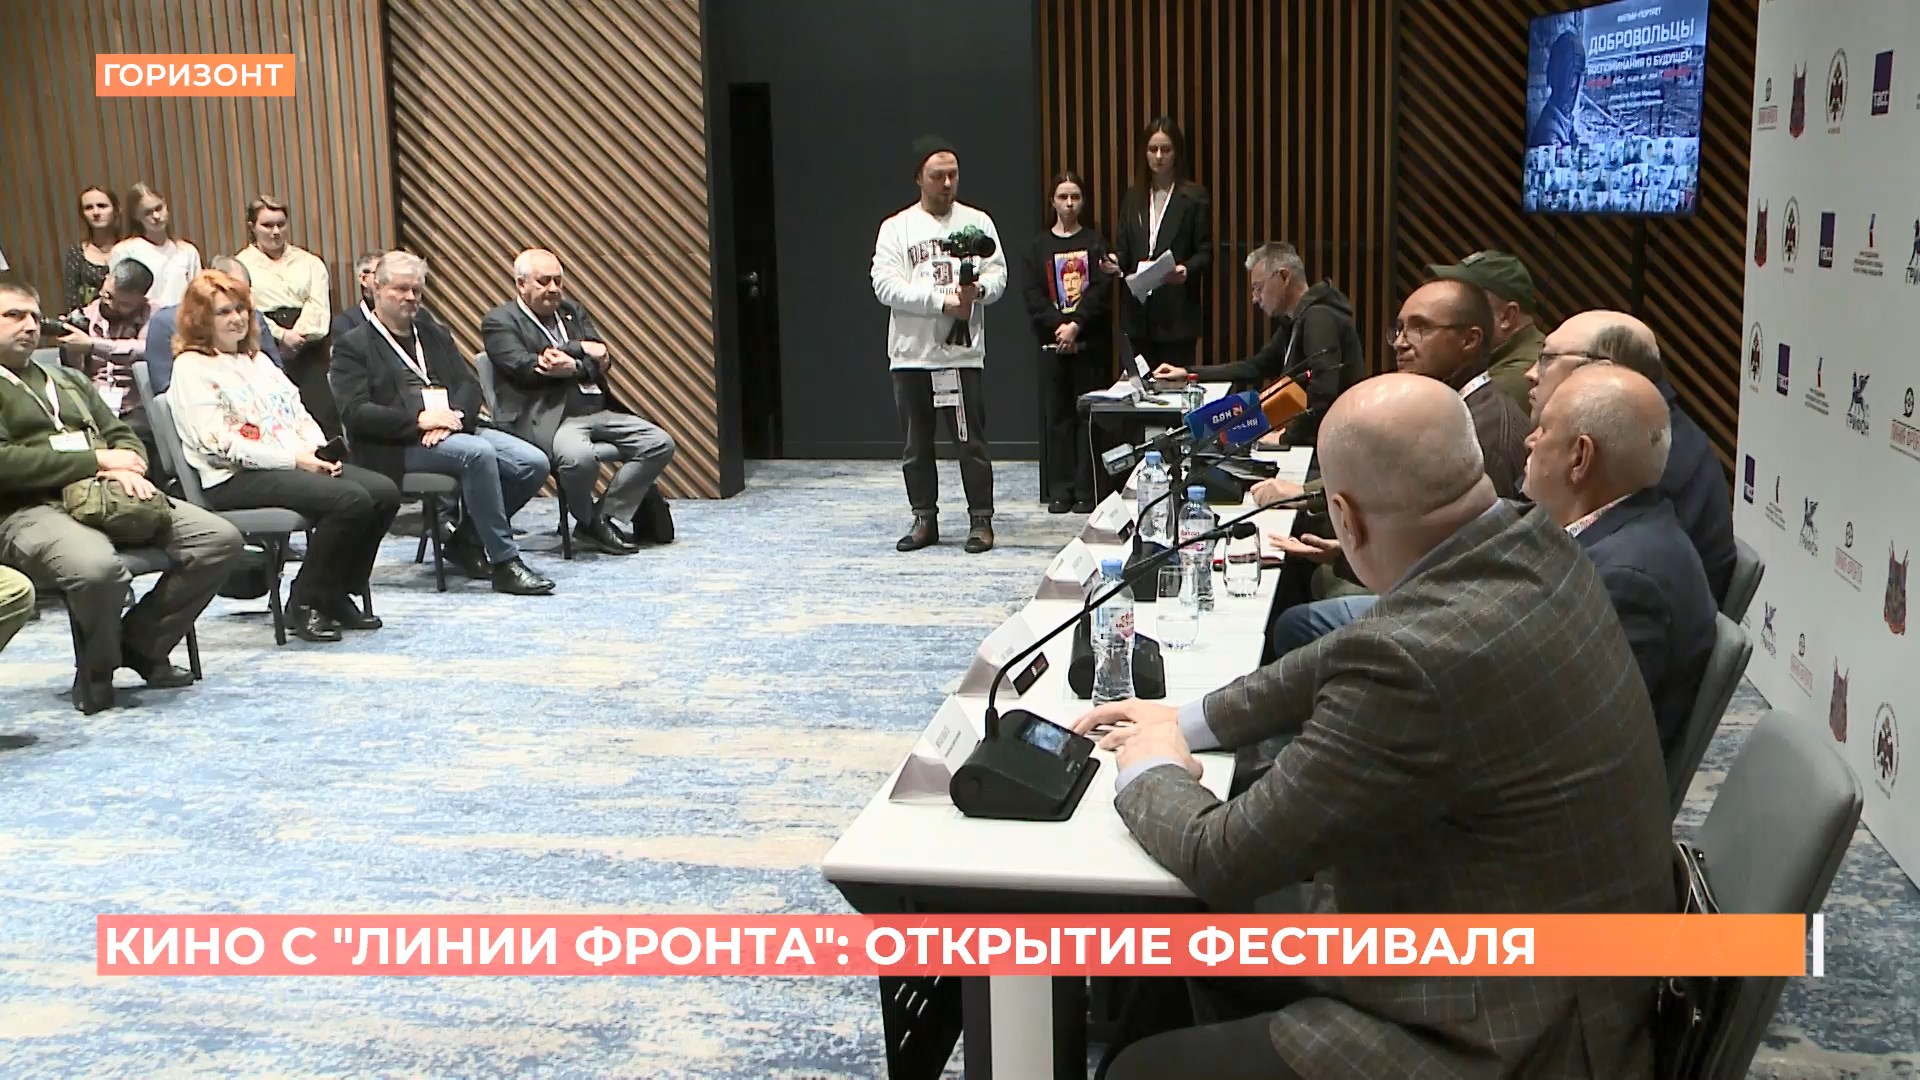 Международный фестиваль документального кино «Линия фронта» собрал в Ростове журналистов из 11 стран